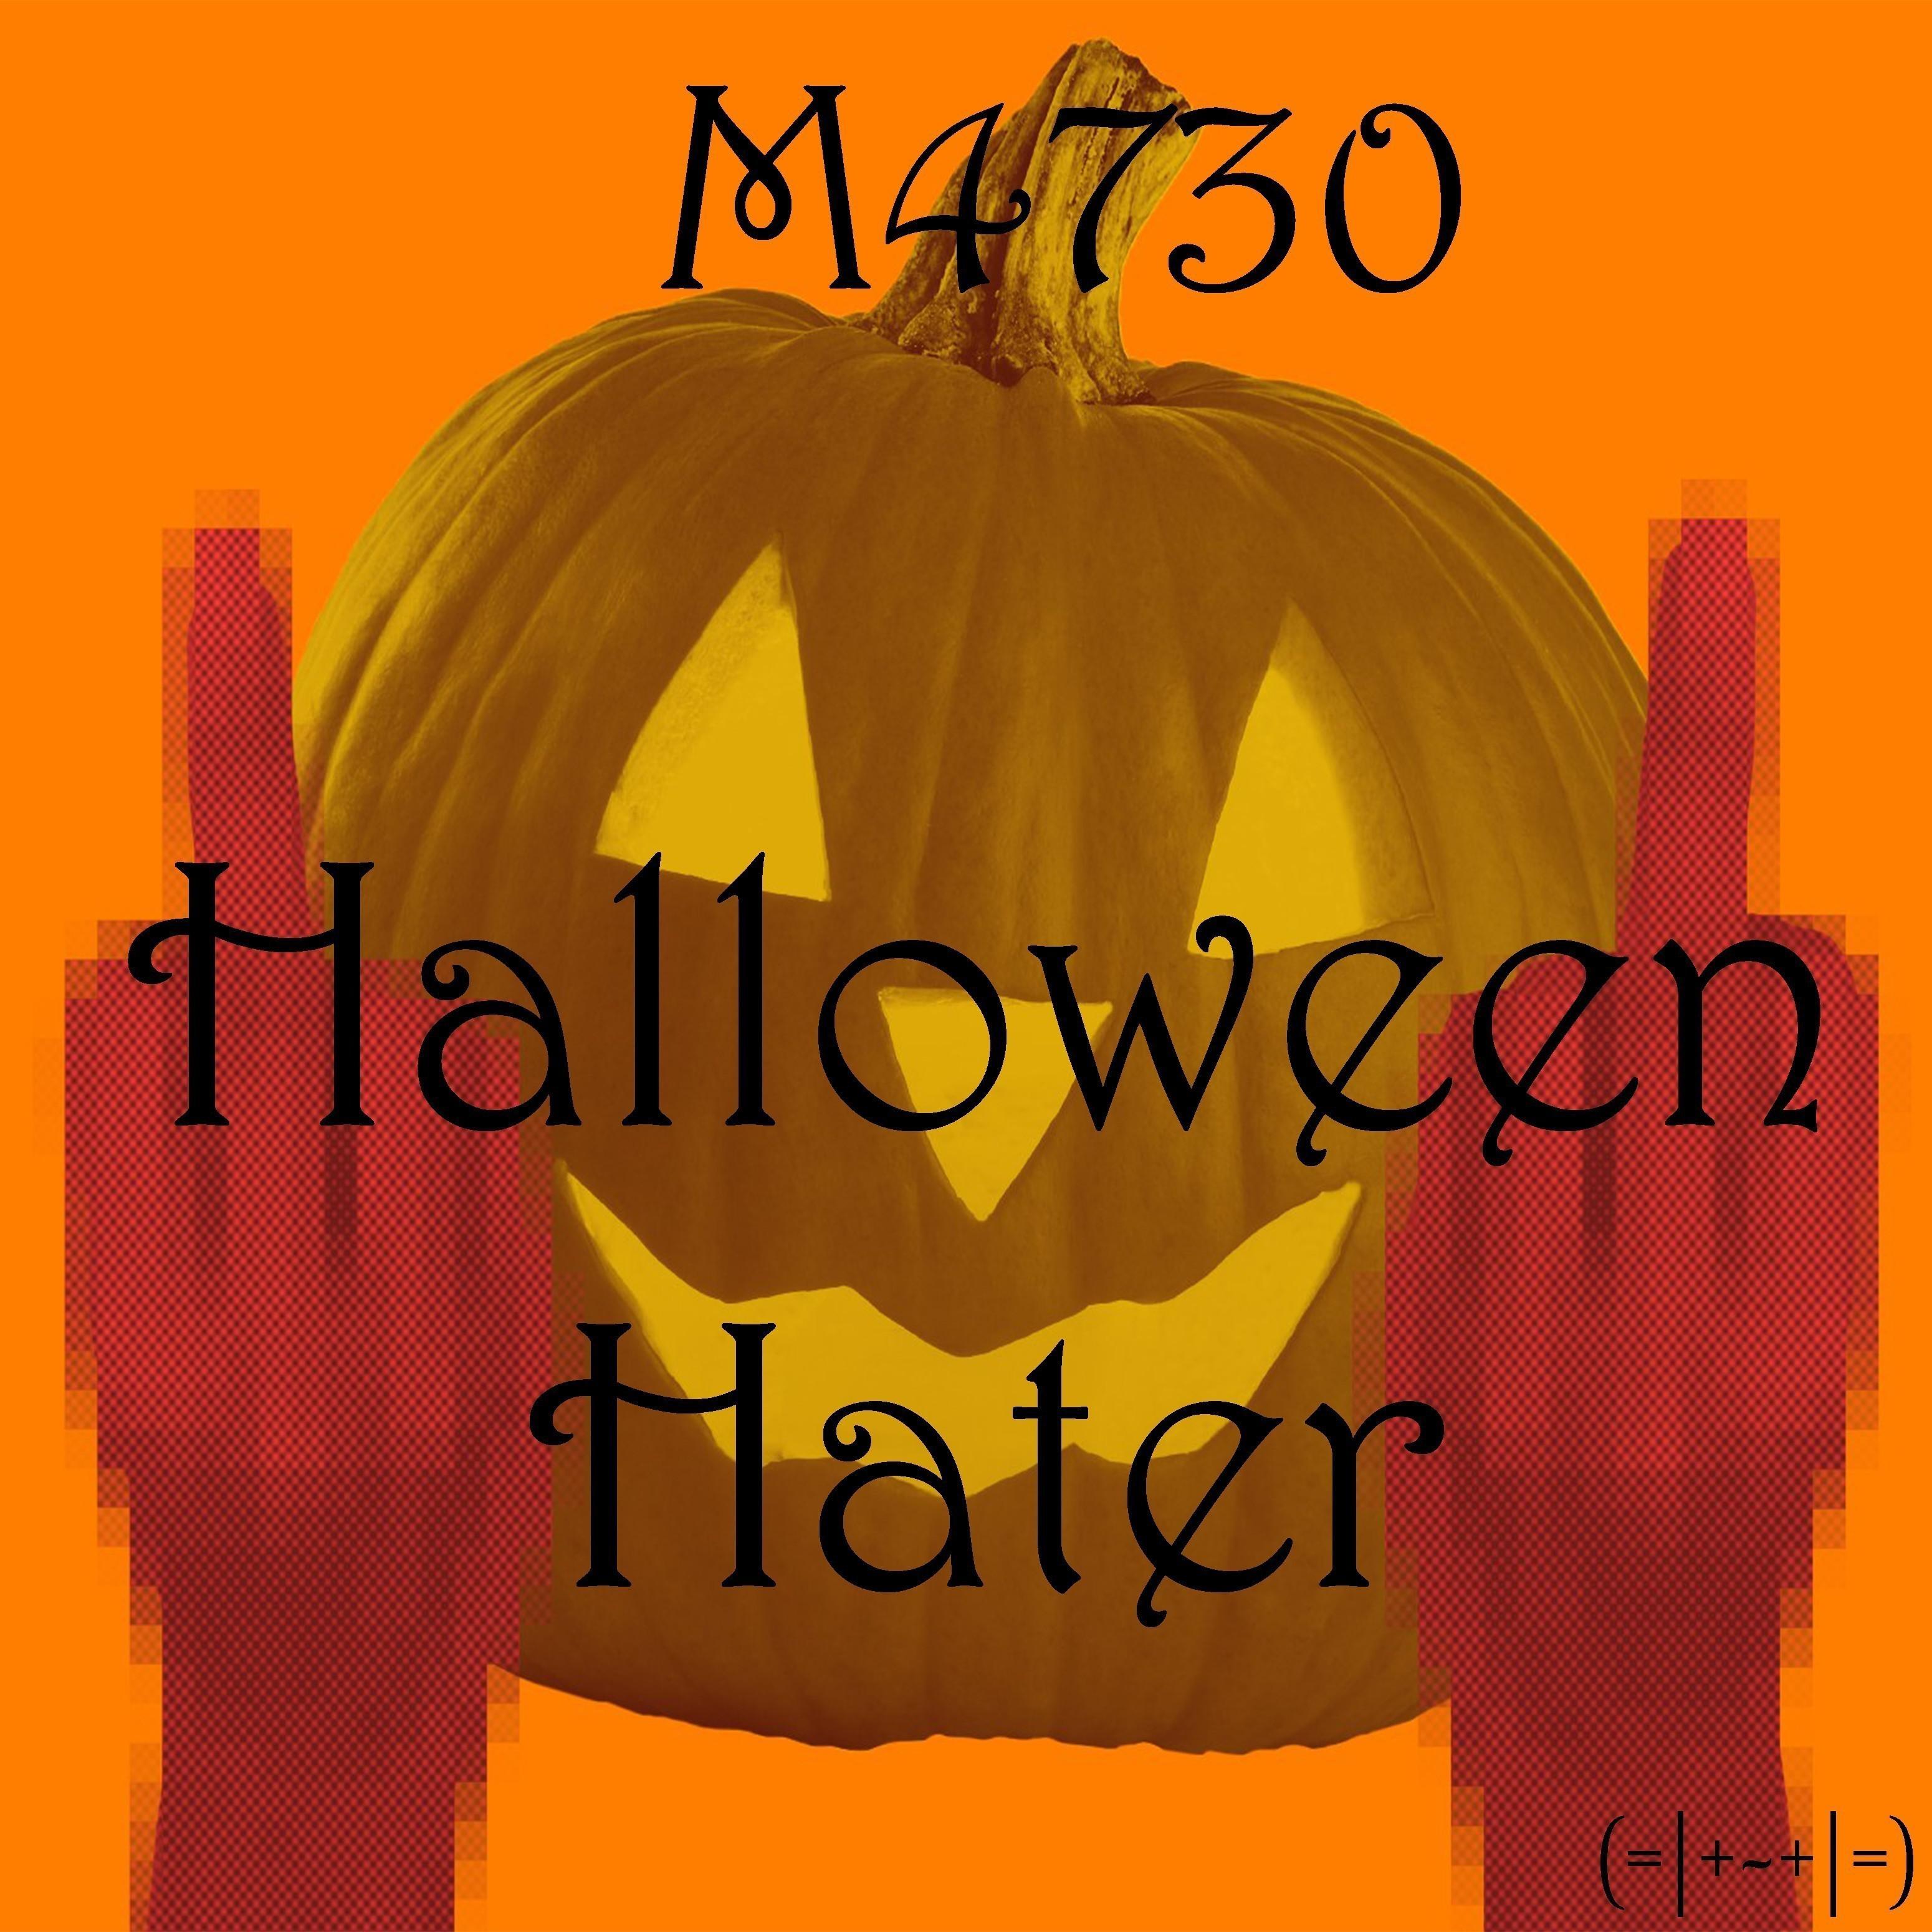 Halloween Hater